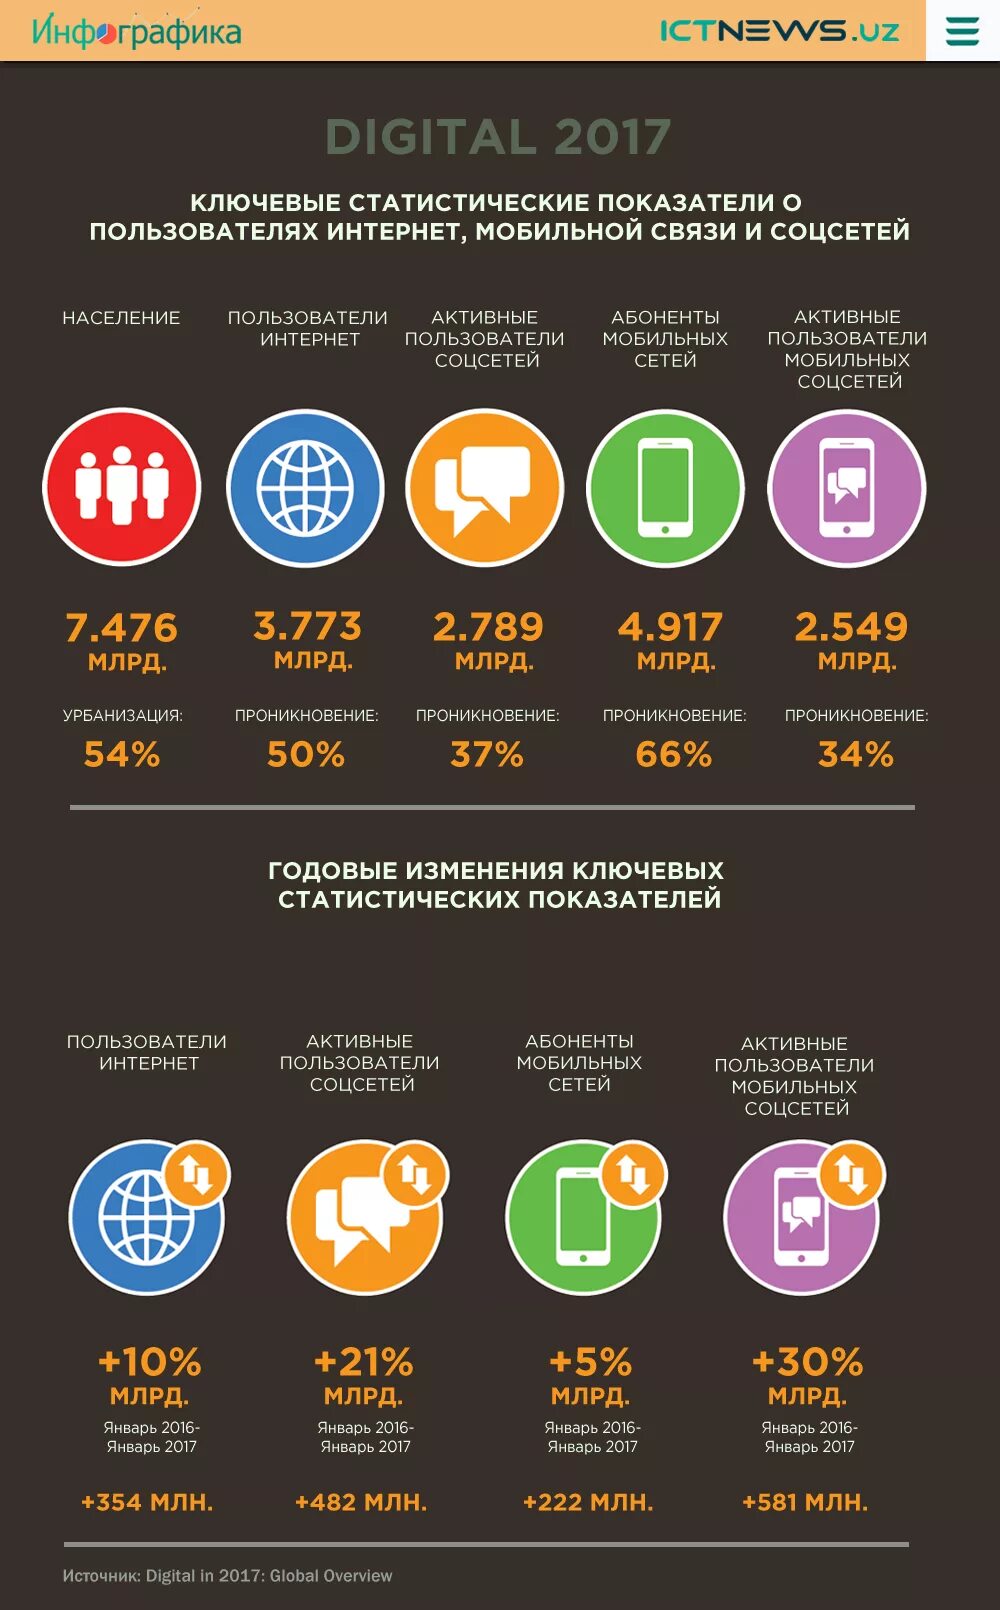 Инфографика интернет. Интернет пользователи инфографика. Инфографика интернет в России. Инфографика интернет в мире.